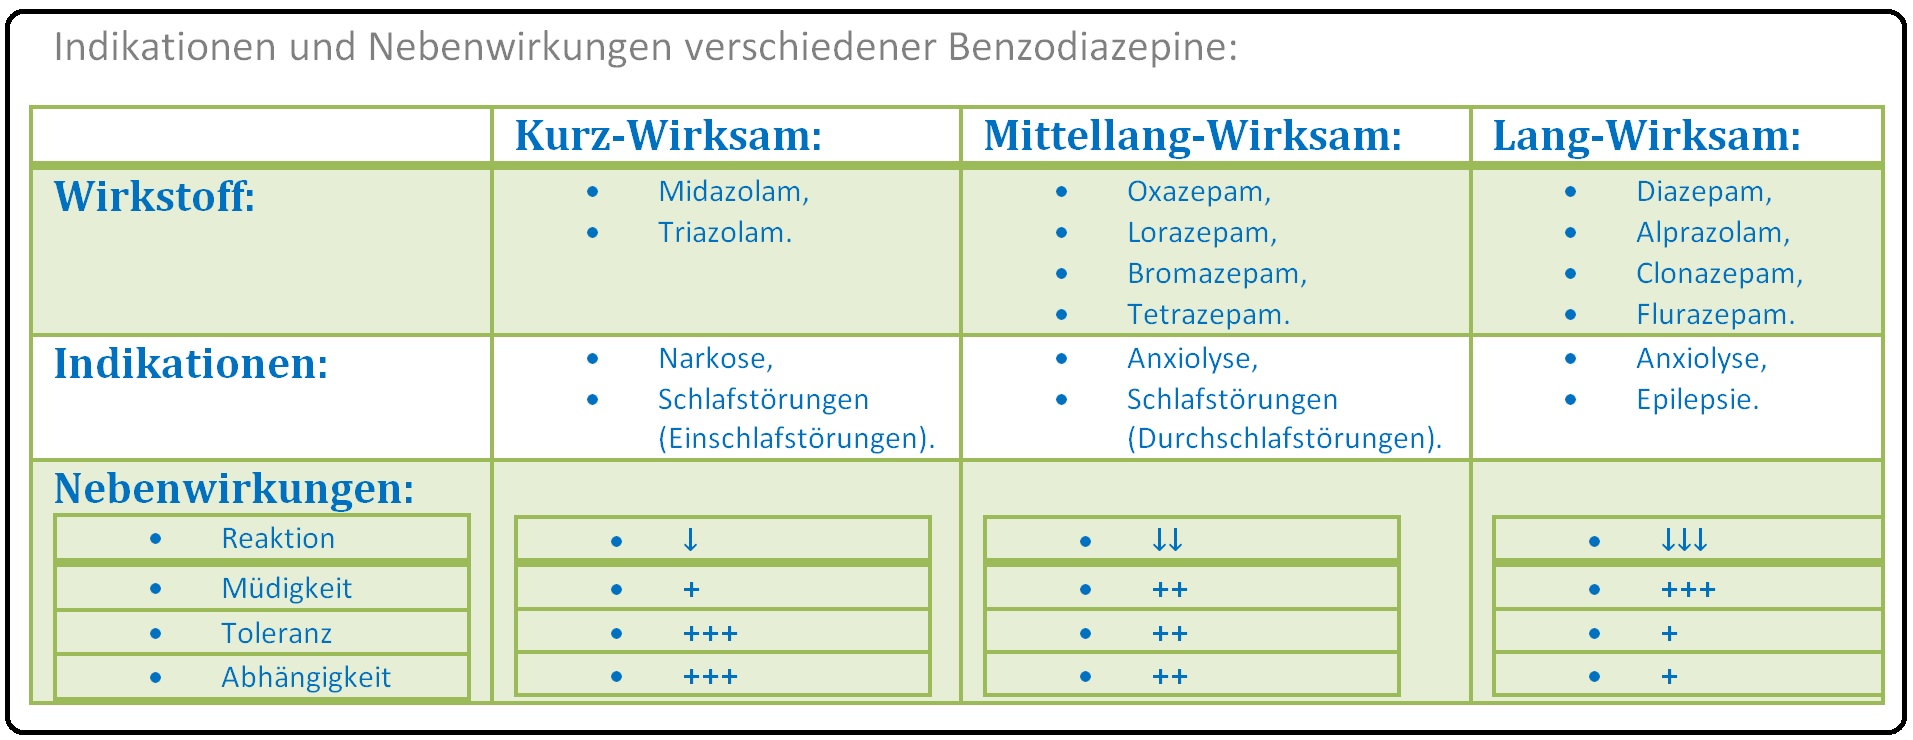 476 Indikationen und Nebenwirkungen verschiedener Benzodiazepine